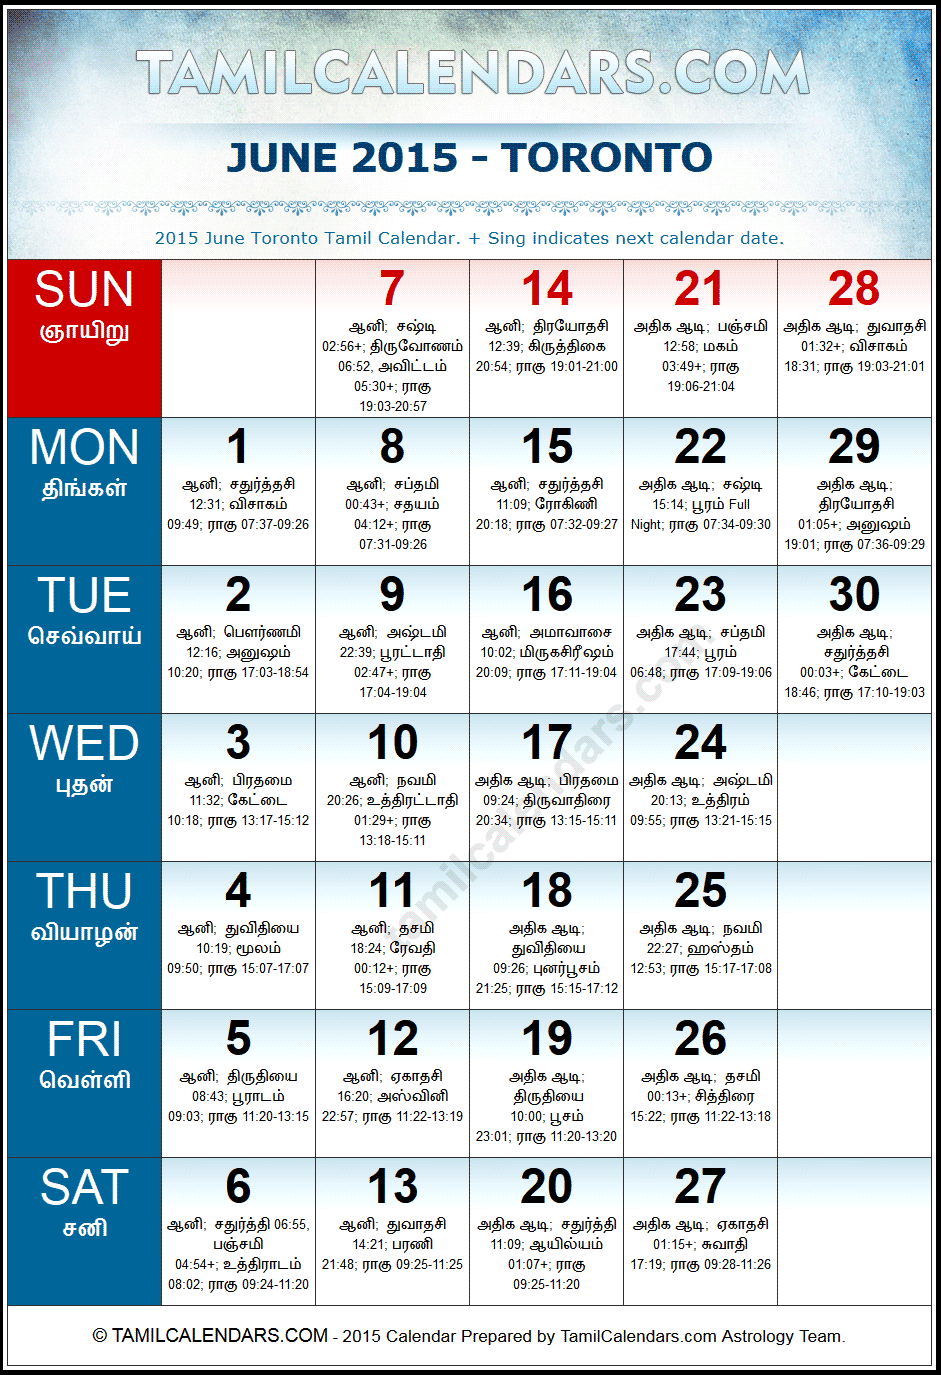 June 2015 Tamil Calendar for Toronto, Canada